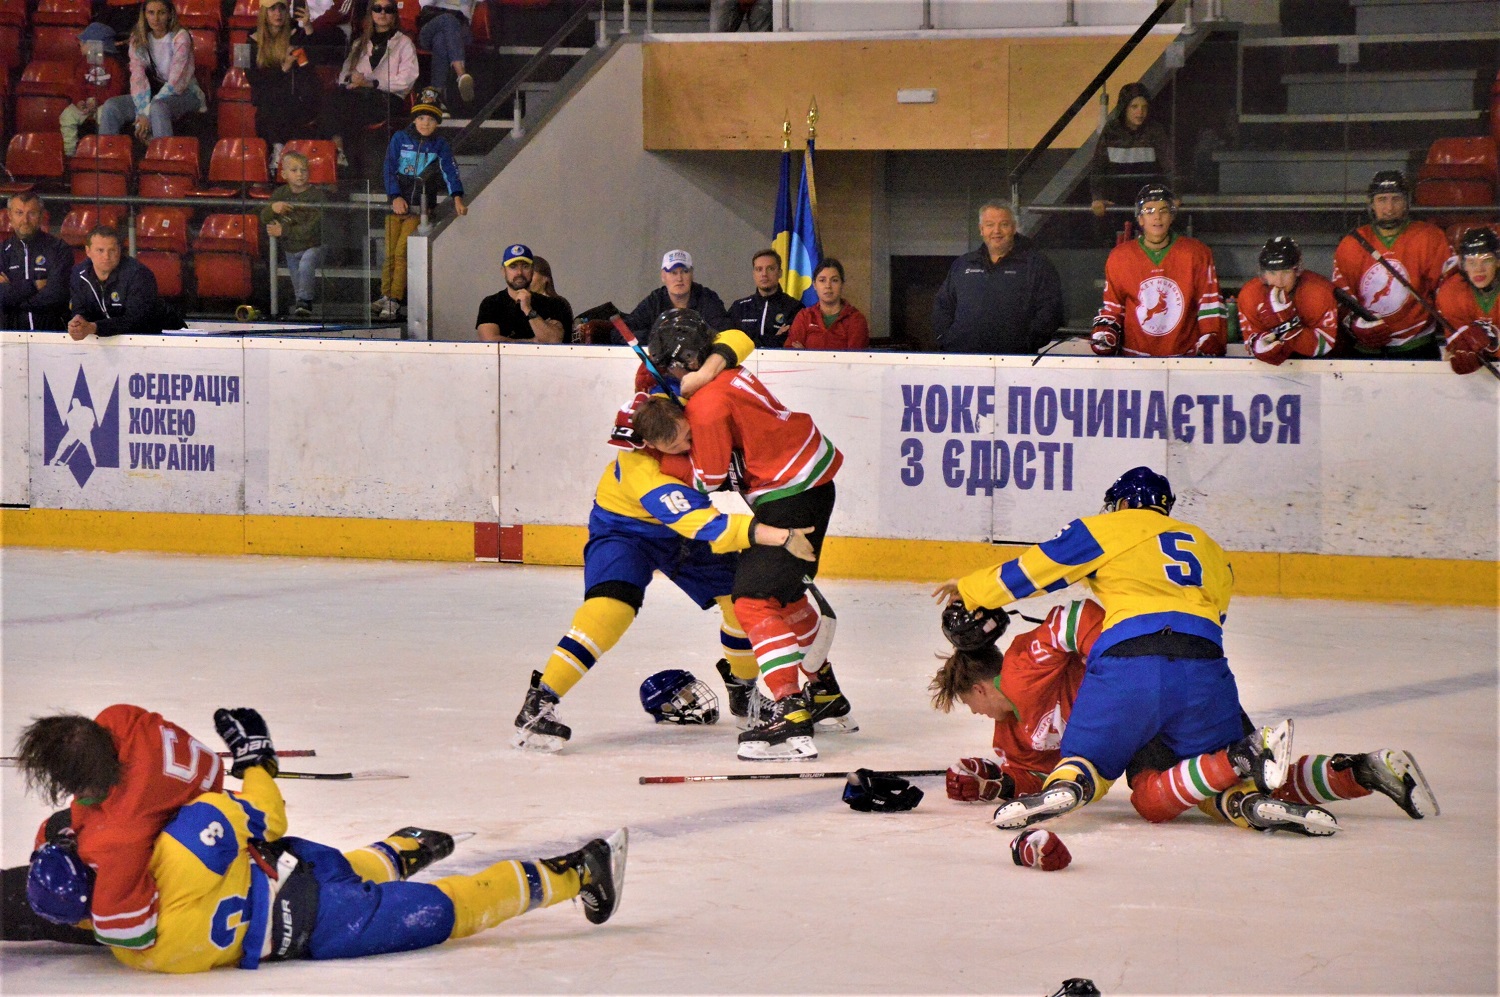 Відповіли за п***сов: українські хокеїсти побили угорців, які образили їх, фото